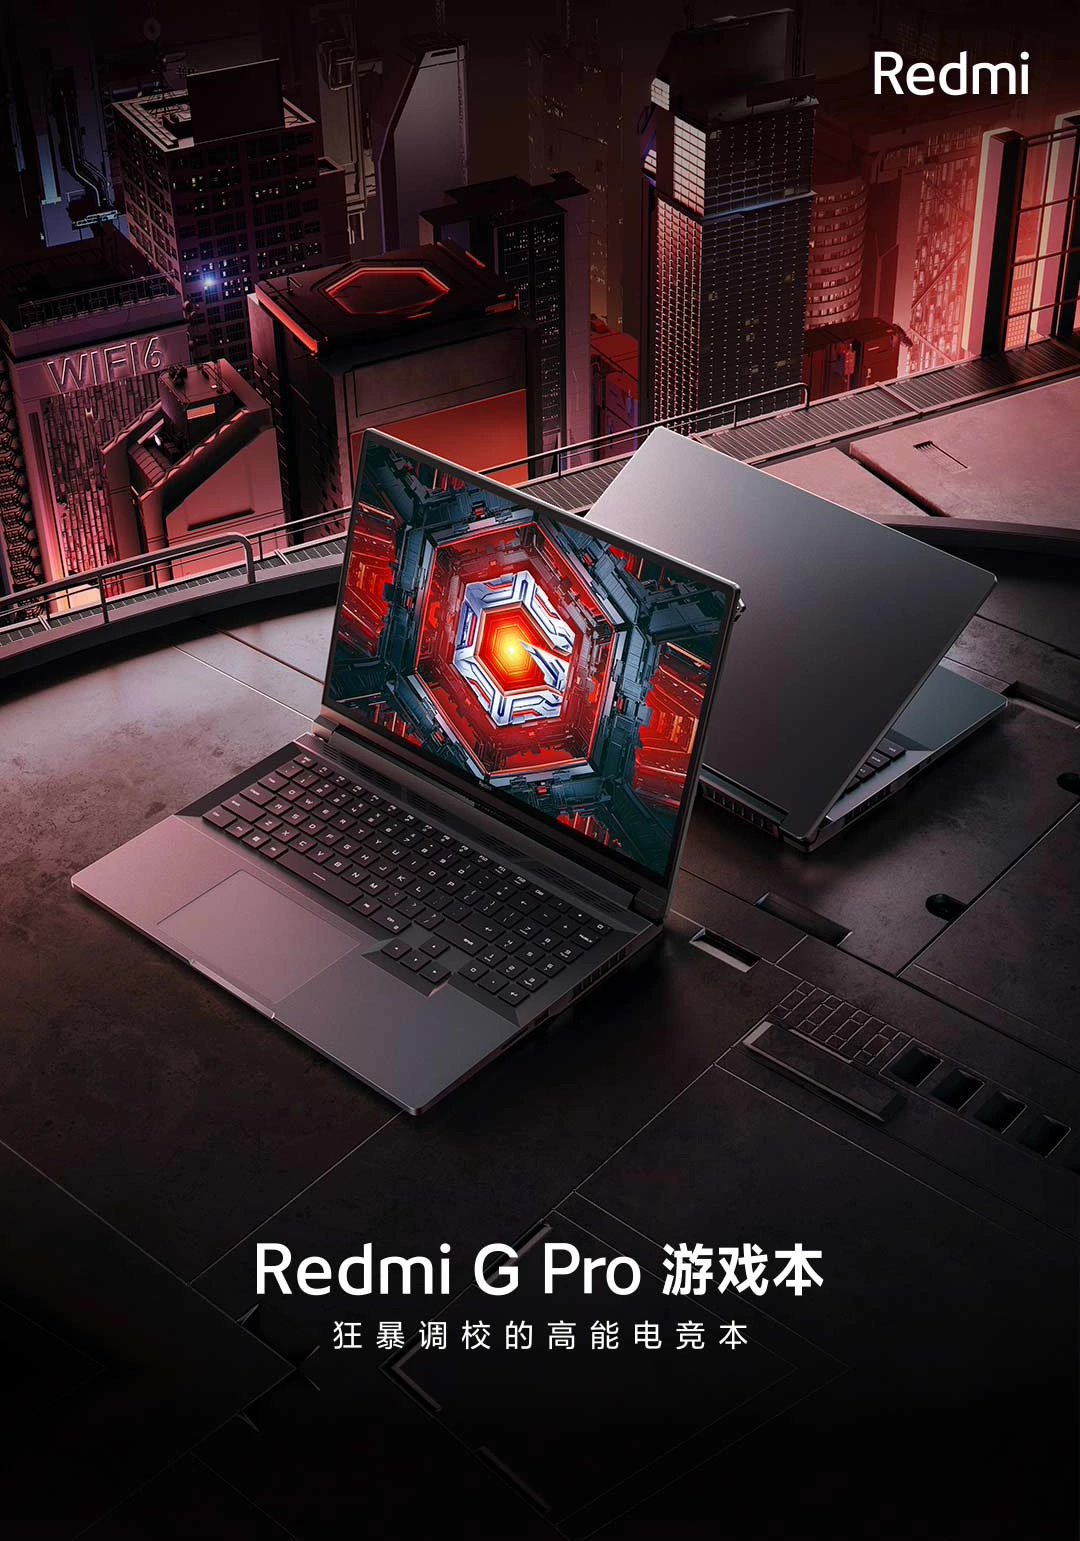 小米后续发布 Redmi G Pro 2024 游戏本，号称“万元内最强”- 第 2 张图片 - 新易生活风水网